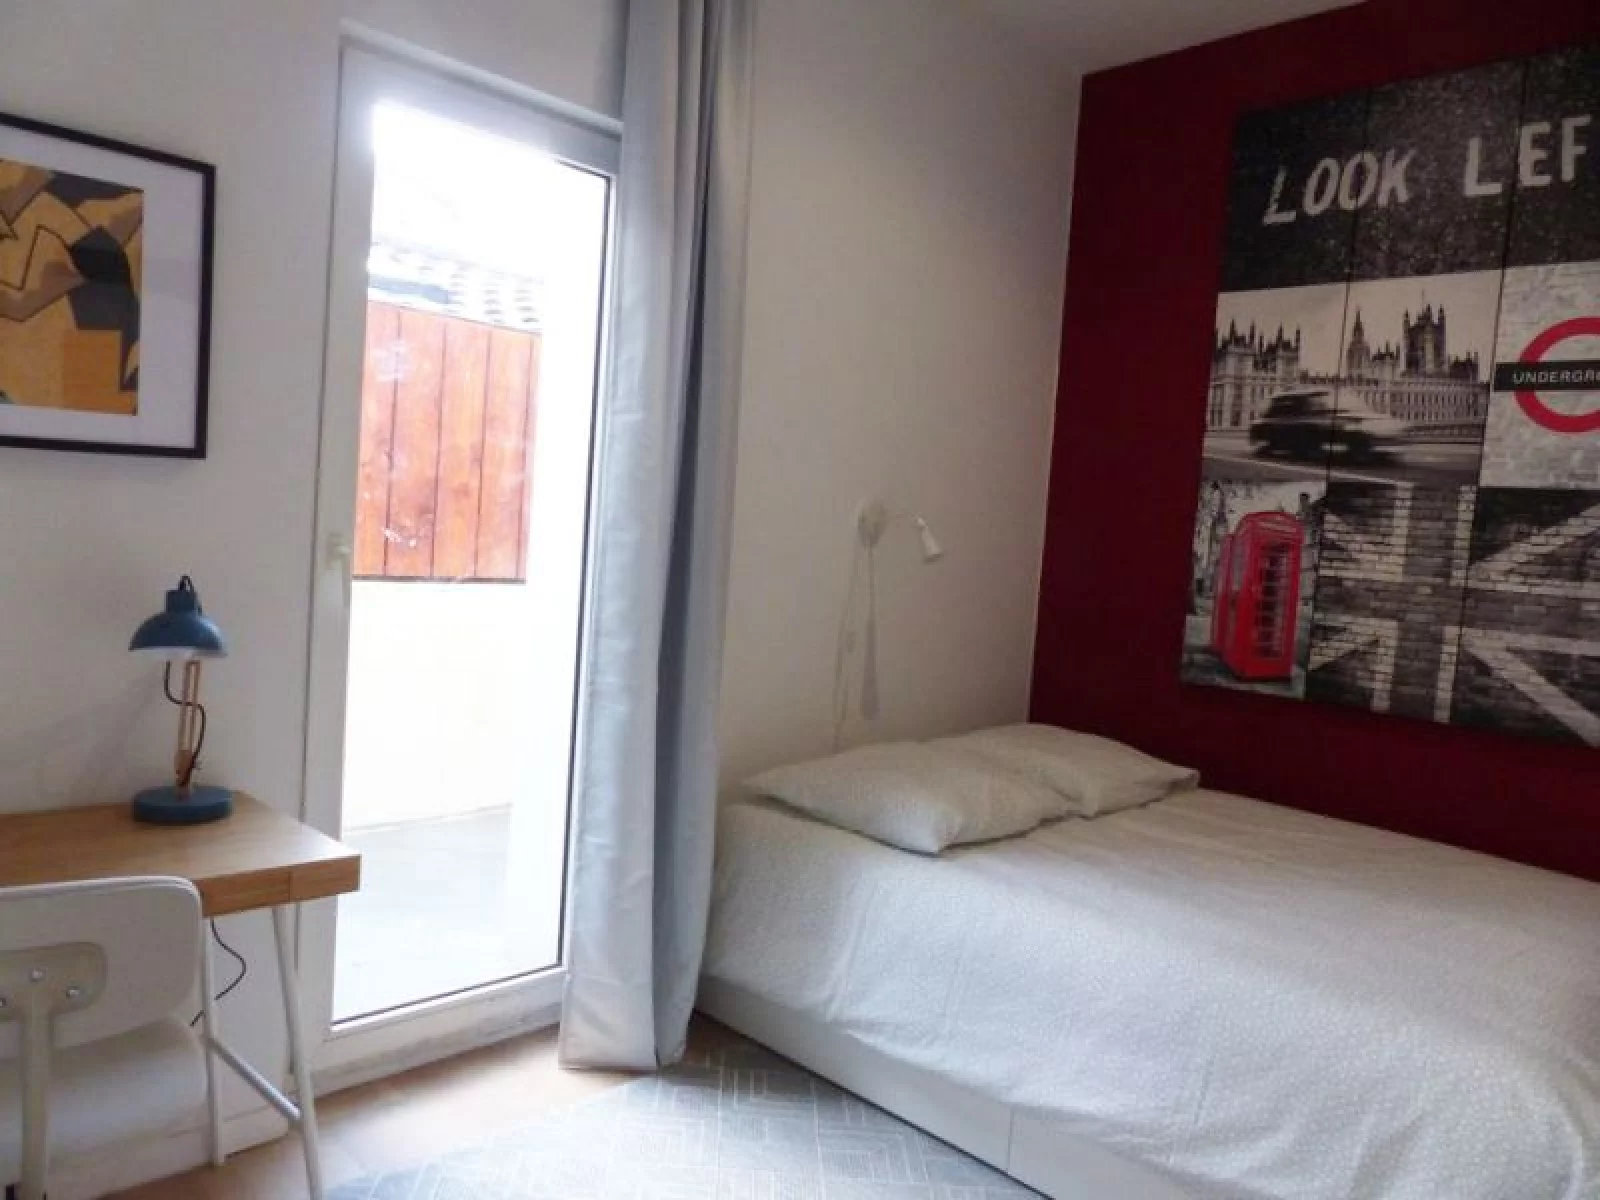 Location chambre meublée 13,6 m² (Bordeaux / Victoire - Nansouty)